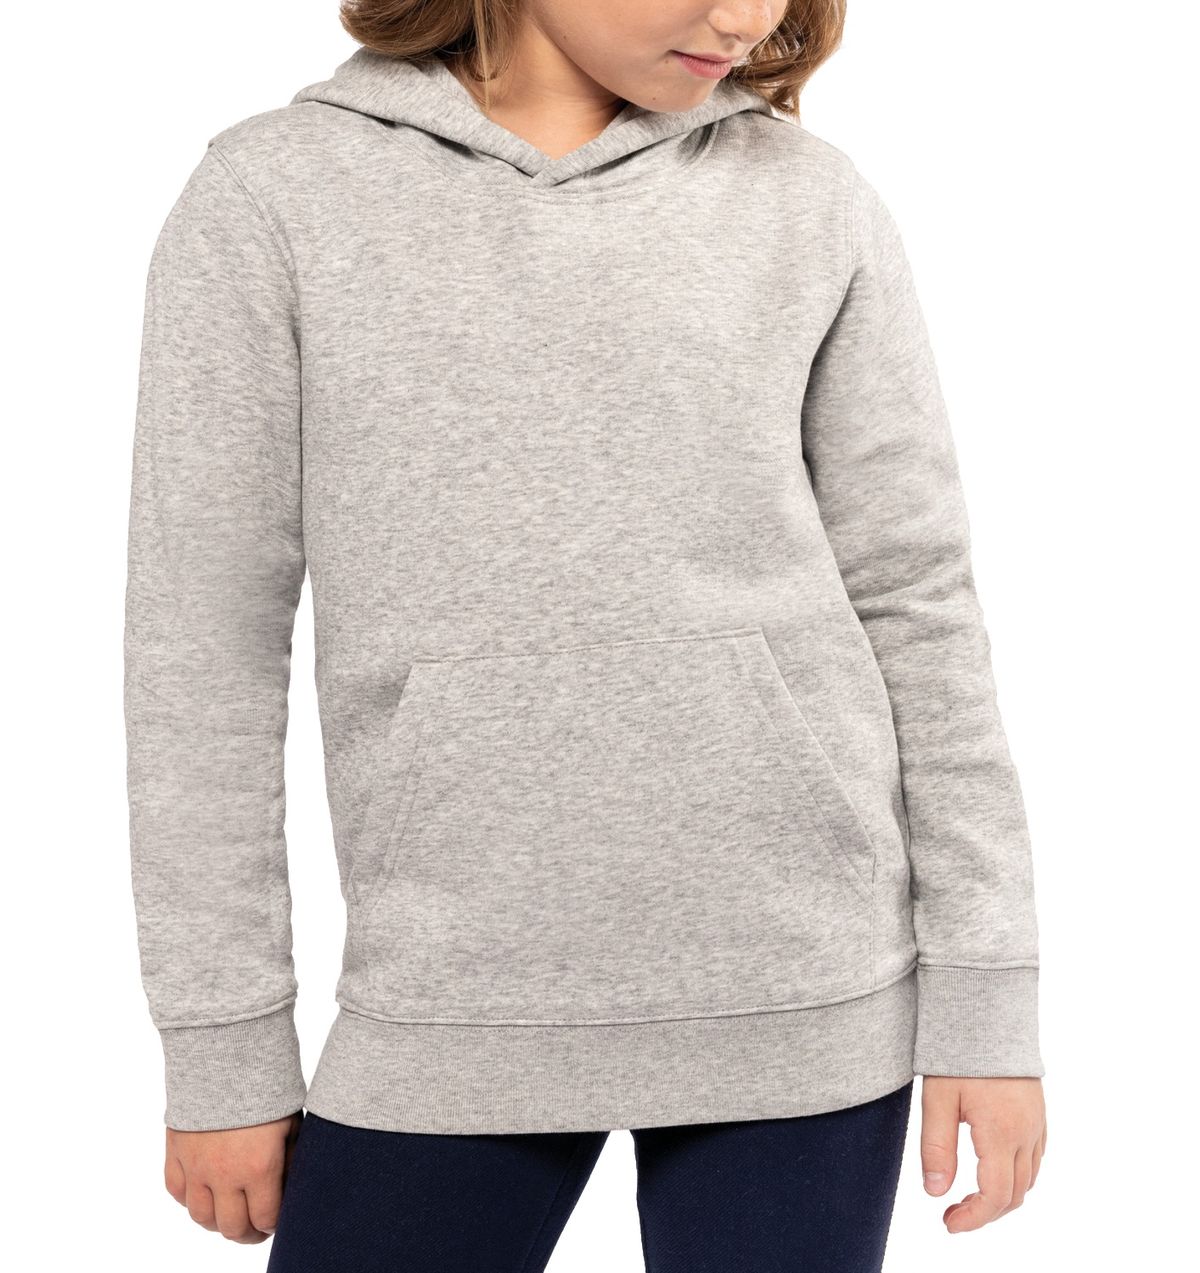 Afbeelding mockup-hoodie-enfant-premium